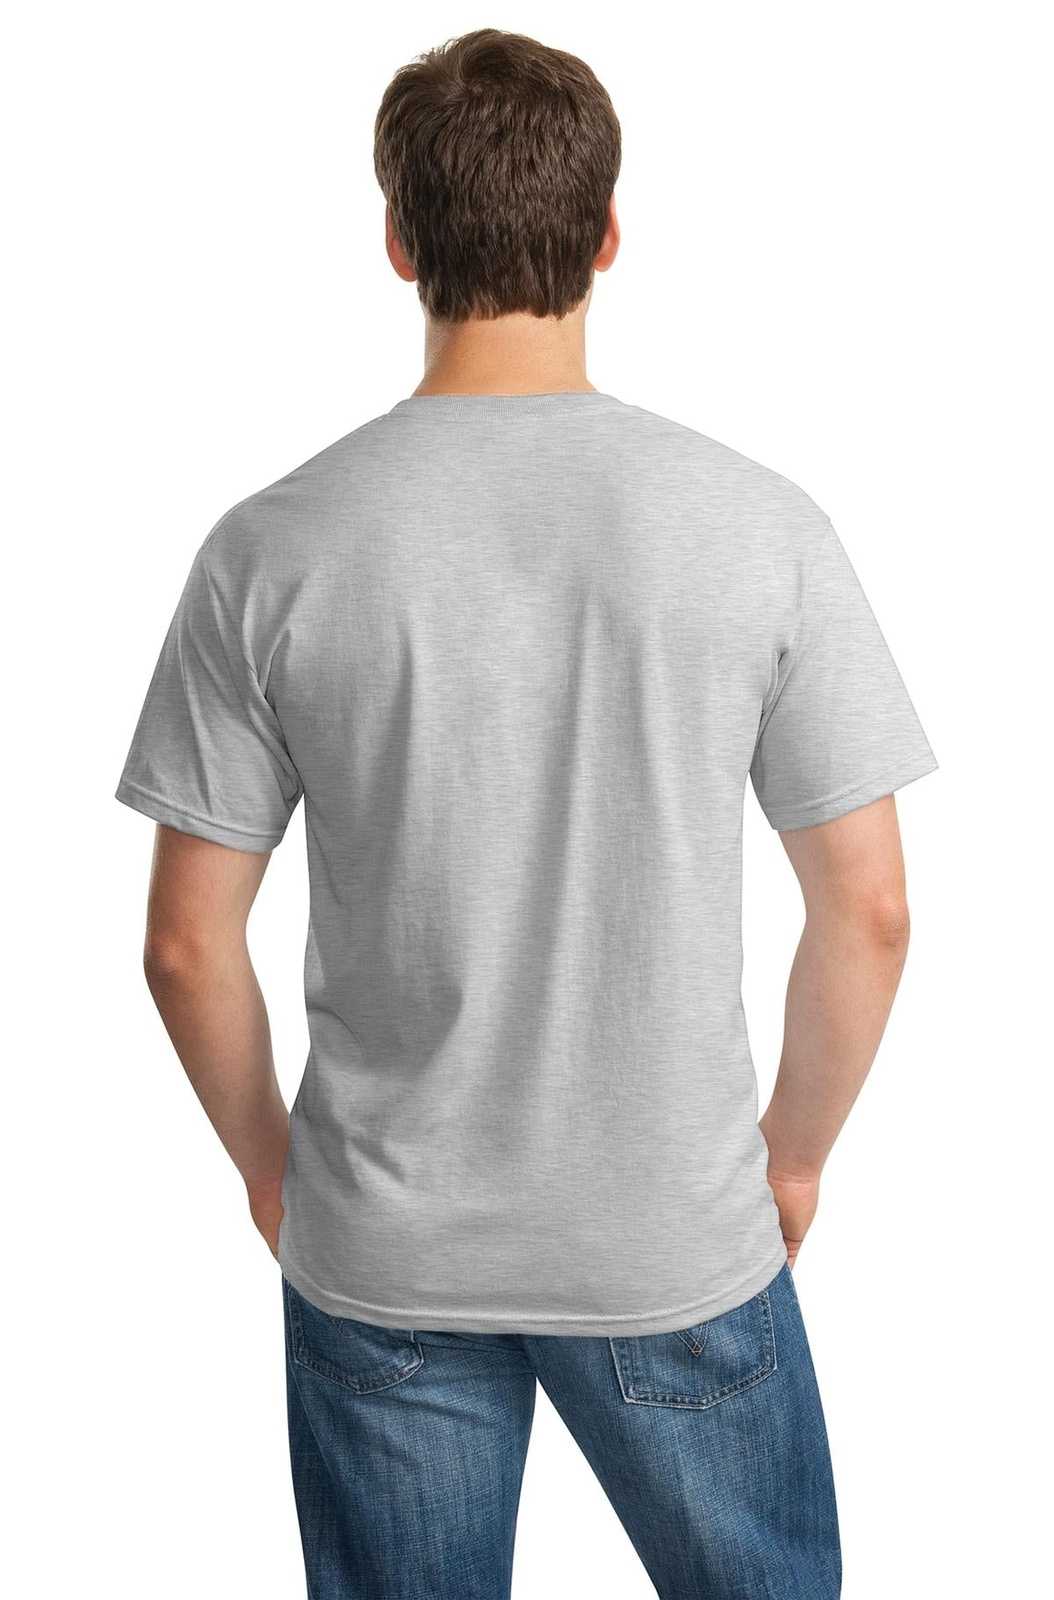 Gildan 5000 Heavy Cotton 100% Cotton T-Shirt - Ash - HIT a Double